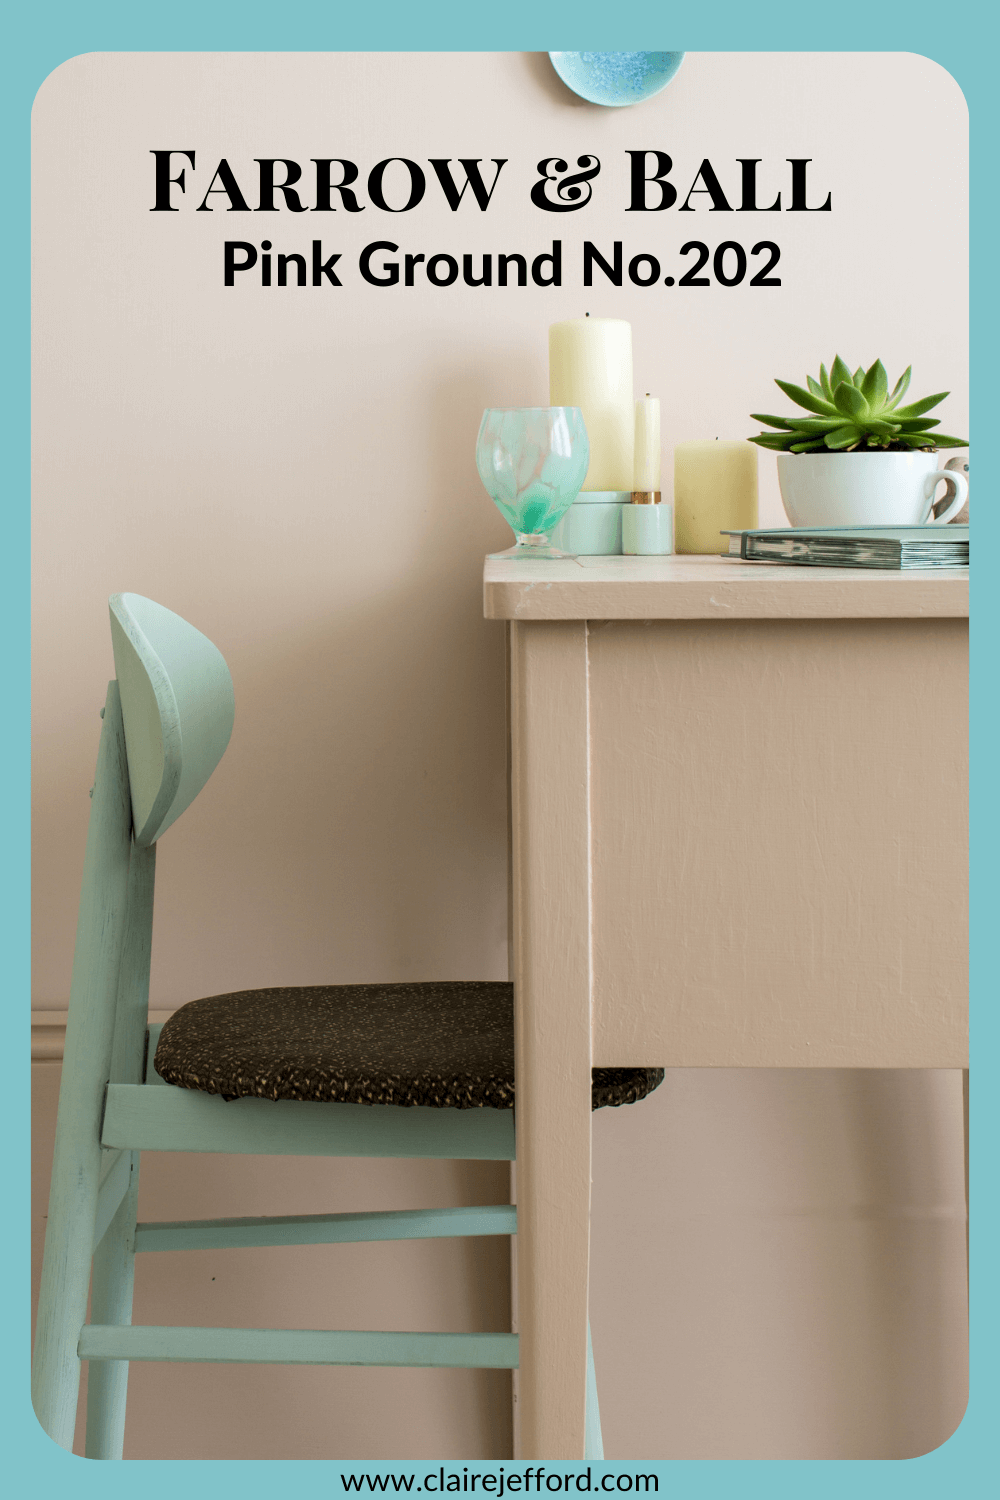 Pink Ground 